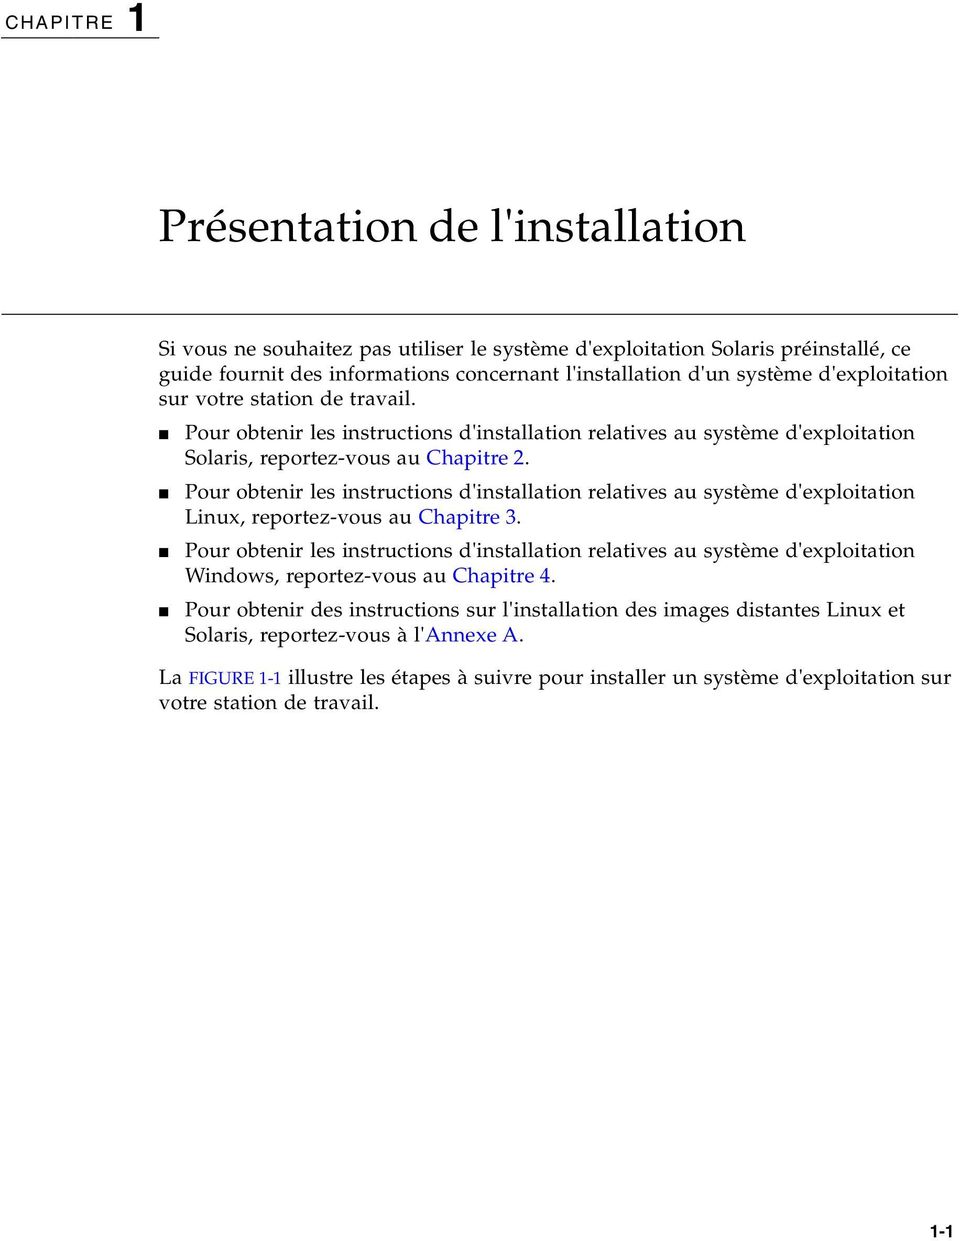 Pour obtenir les instructions d'installation relatives au système d'exploitation Linux, reportez-vous au Chapitre 3.